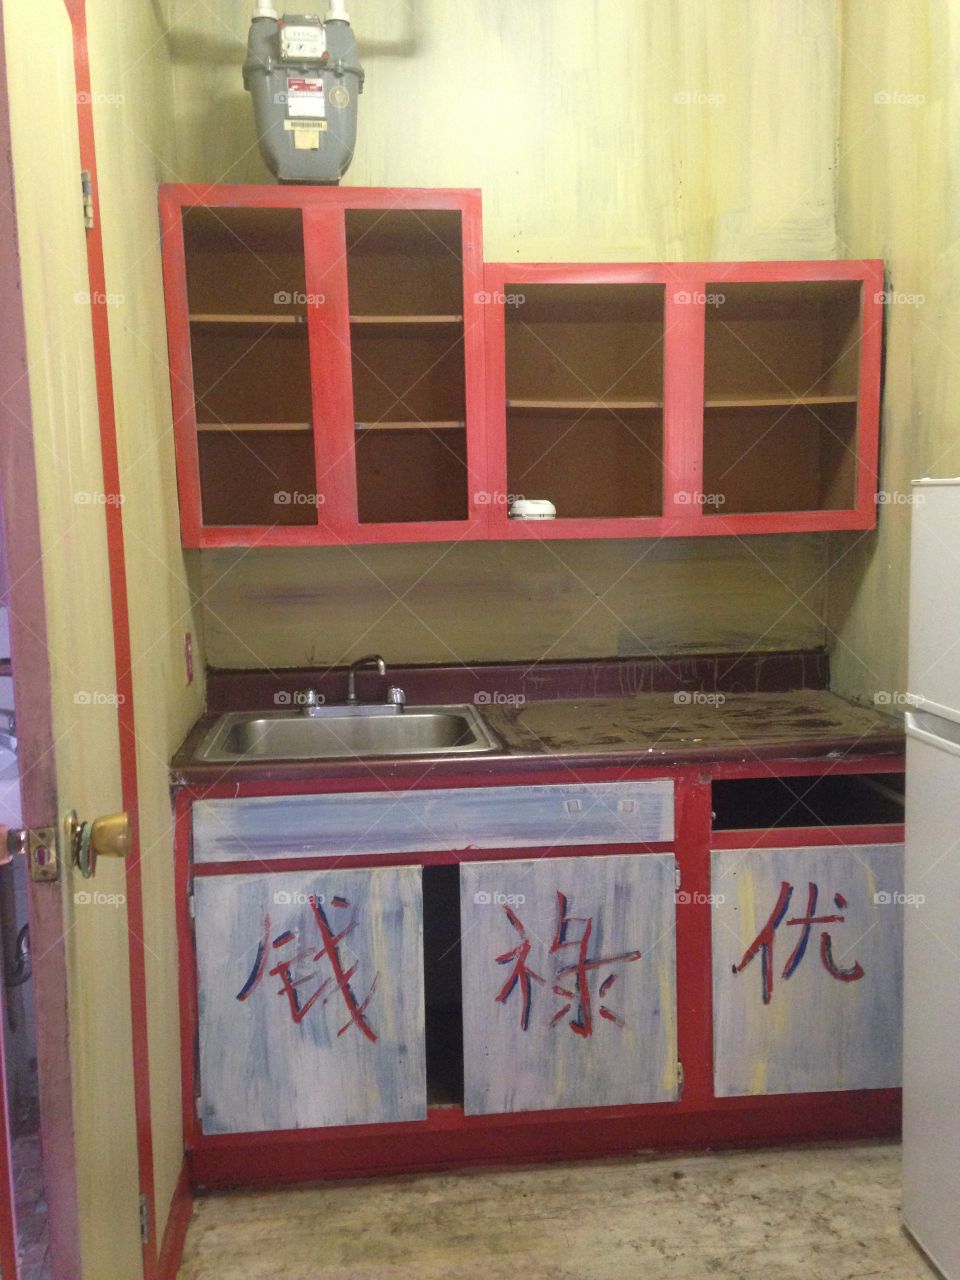 Kitchen cabinets, Chinese writing 